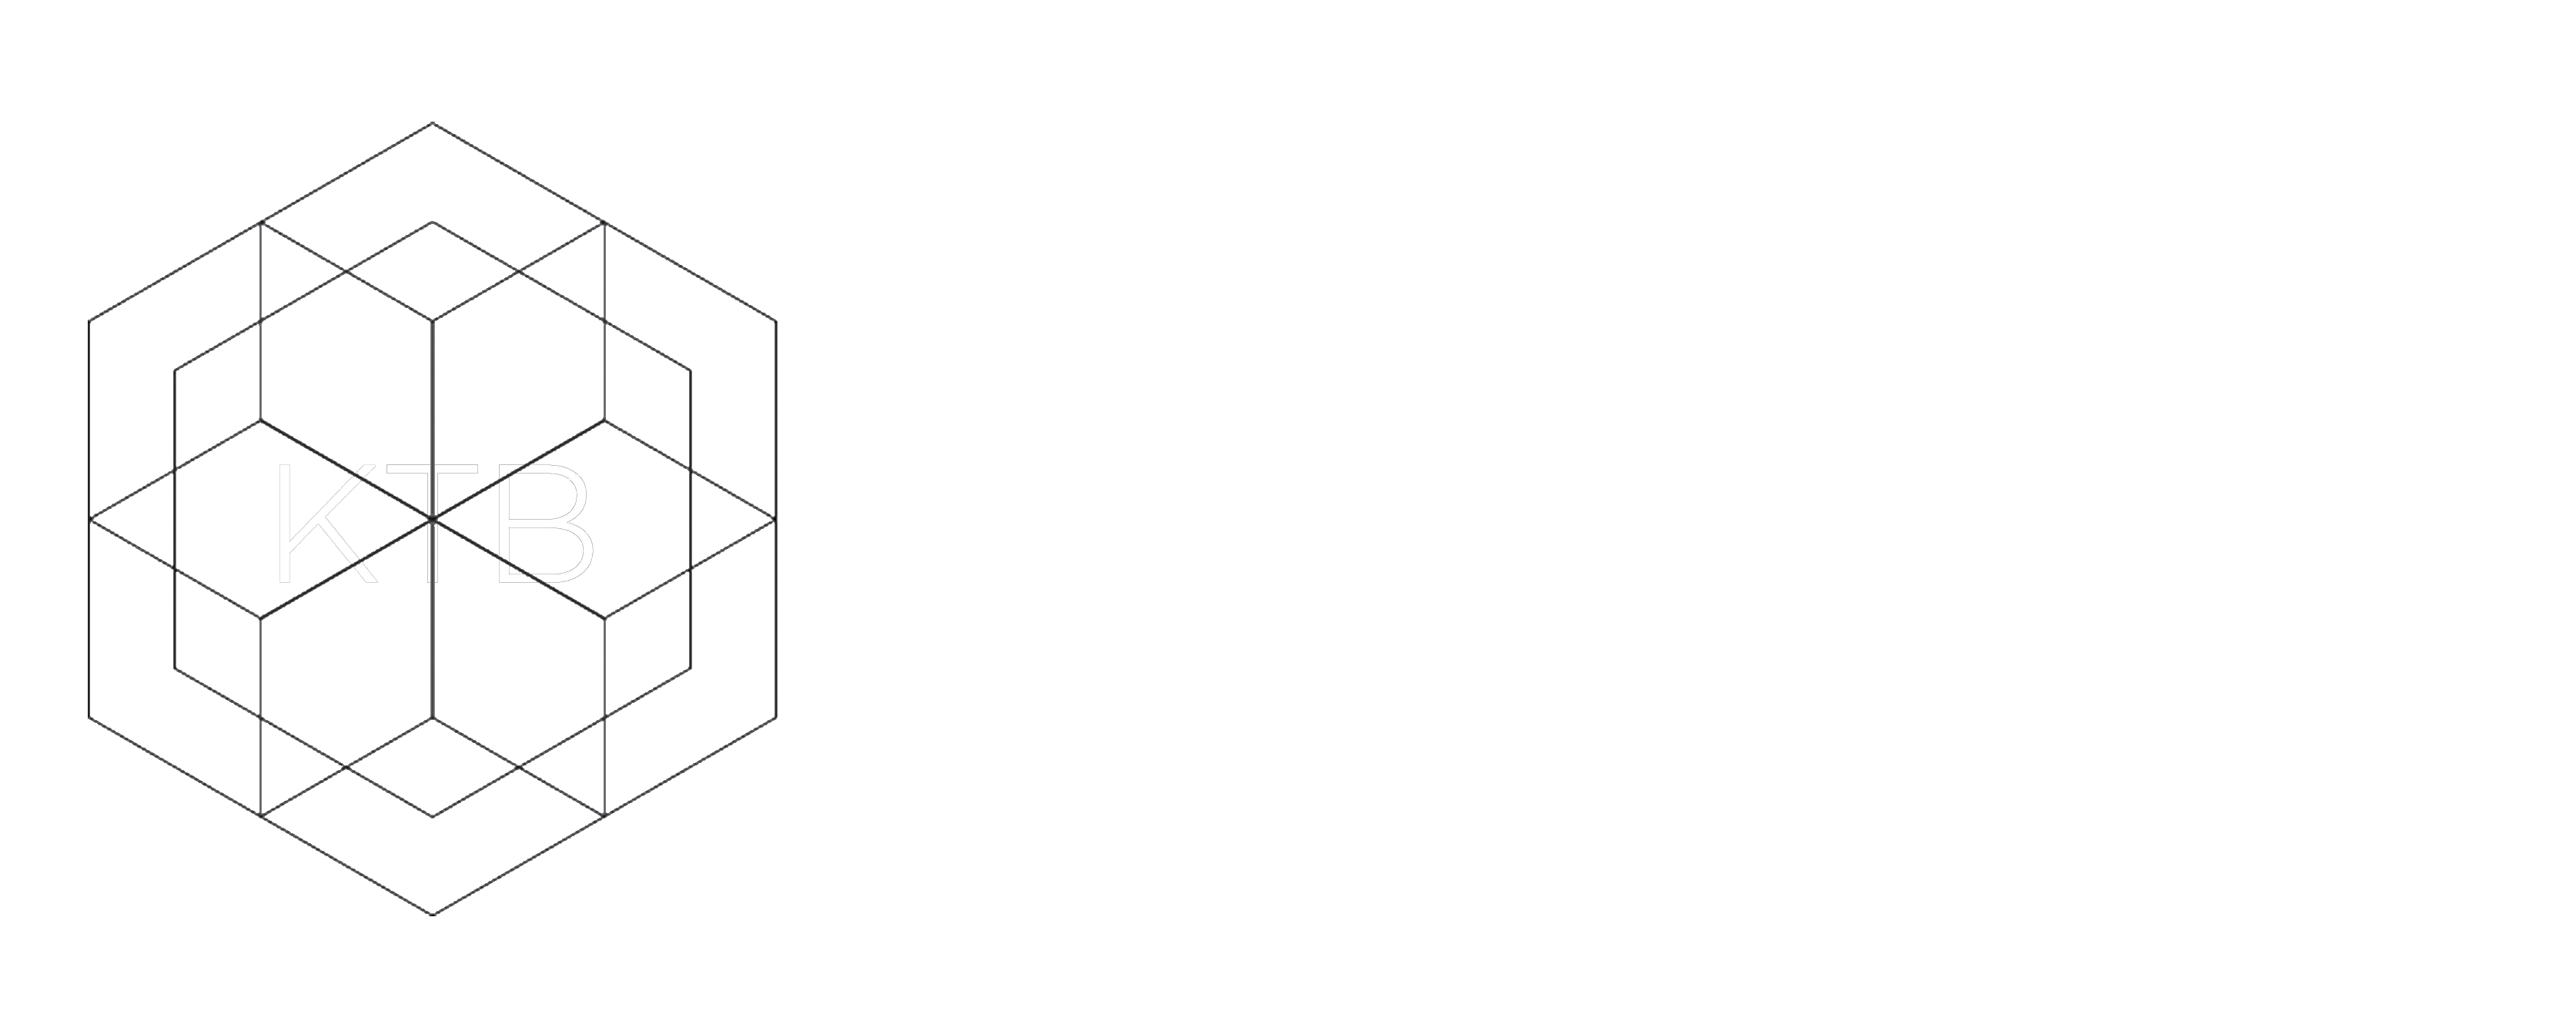 KTB Architecture